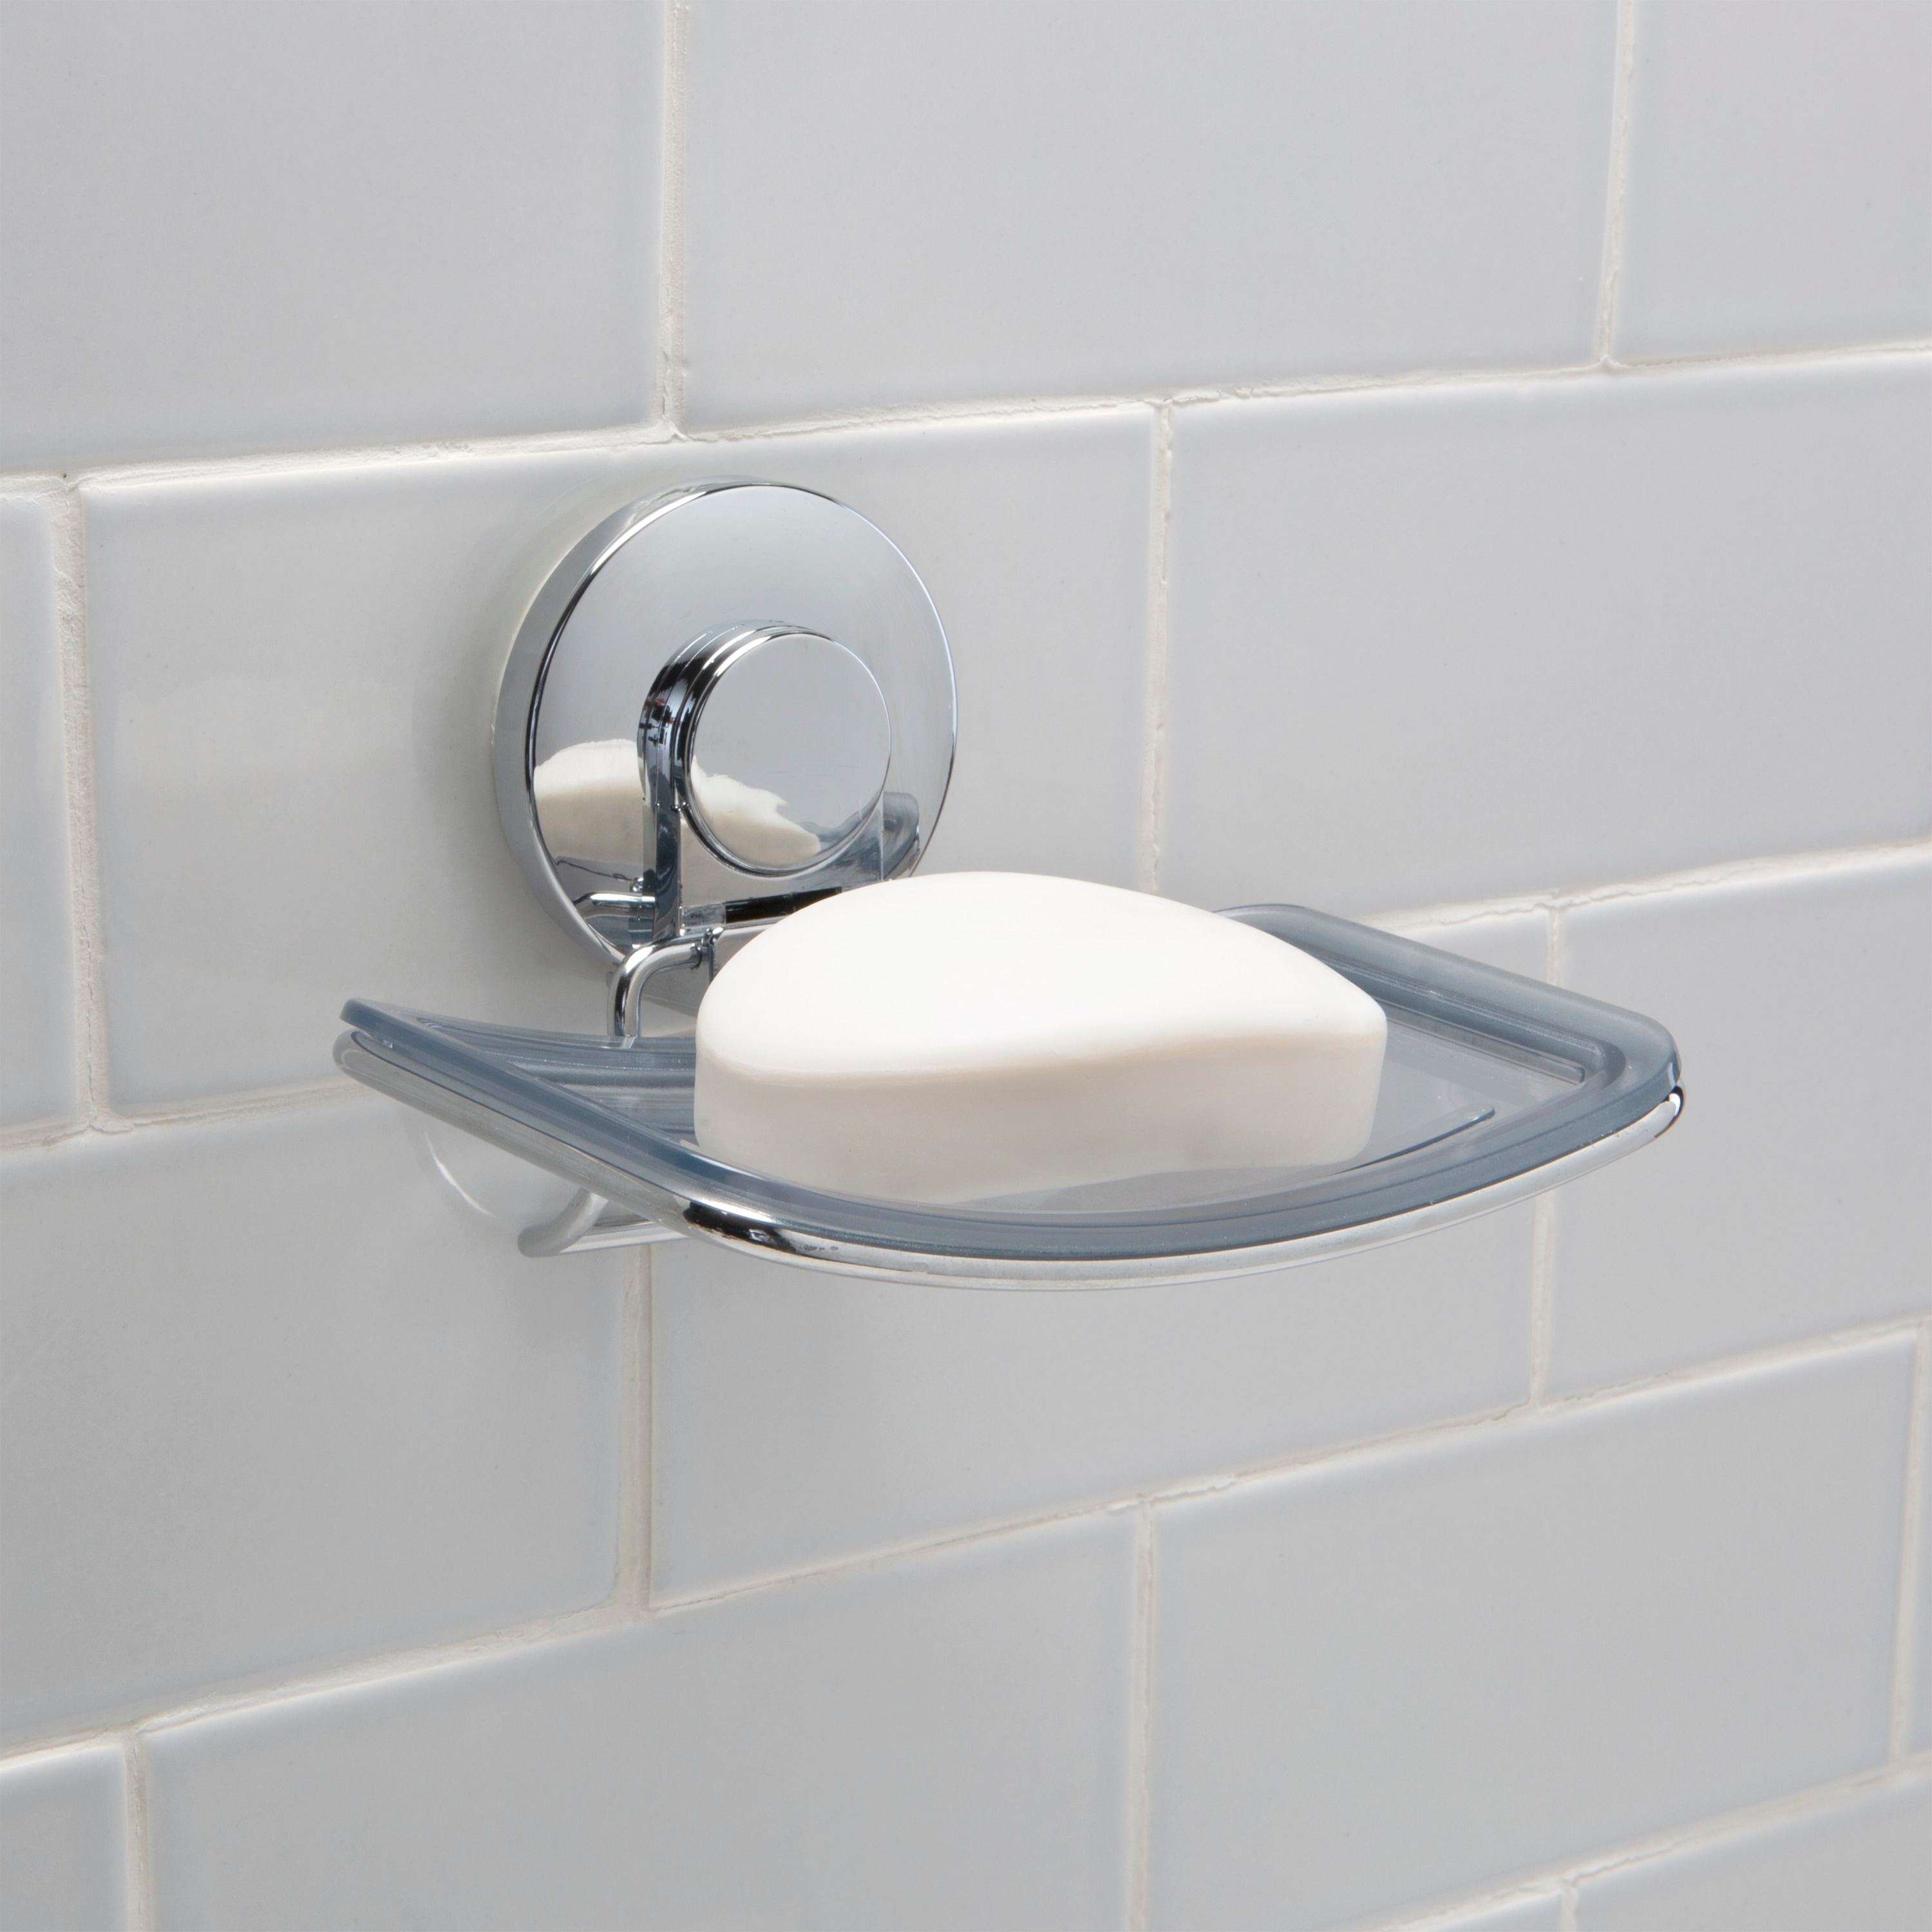 Leaf Design Soap Dish Plate Riser Rail Holder Storage Bathroom Shower 6T 